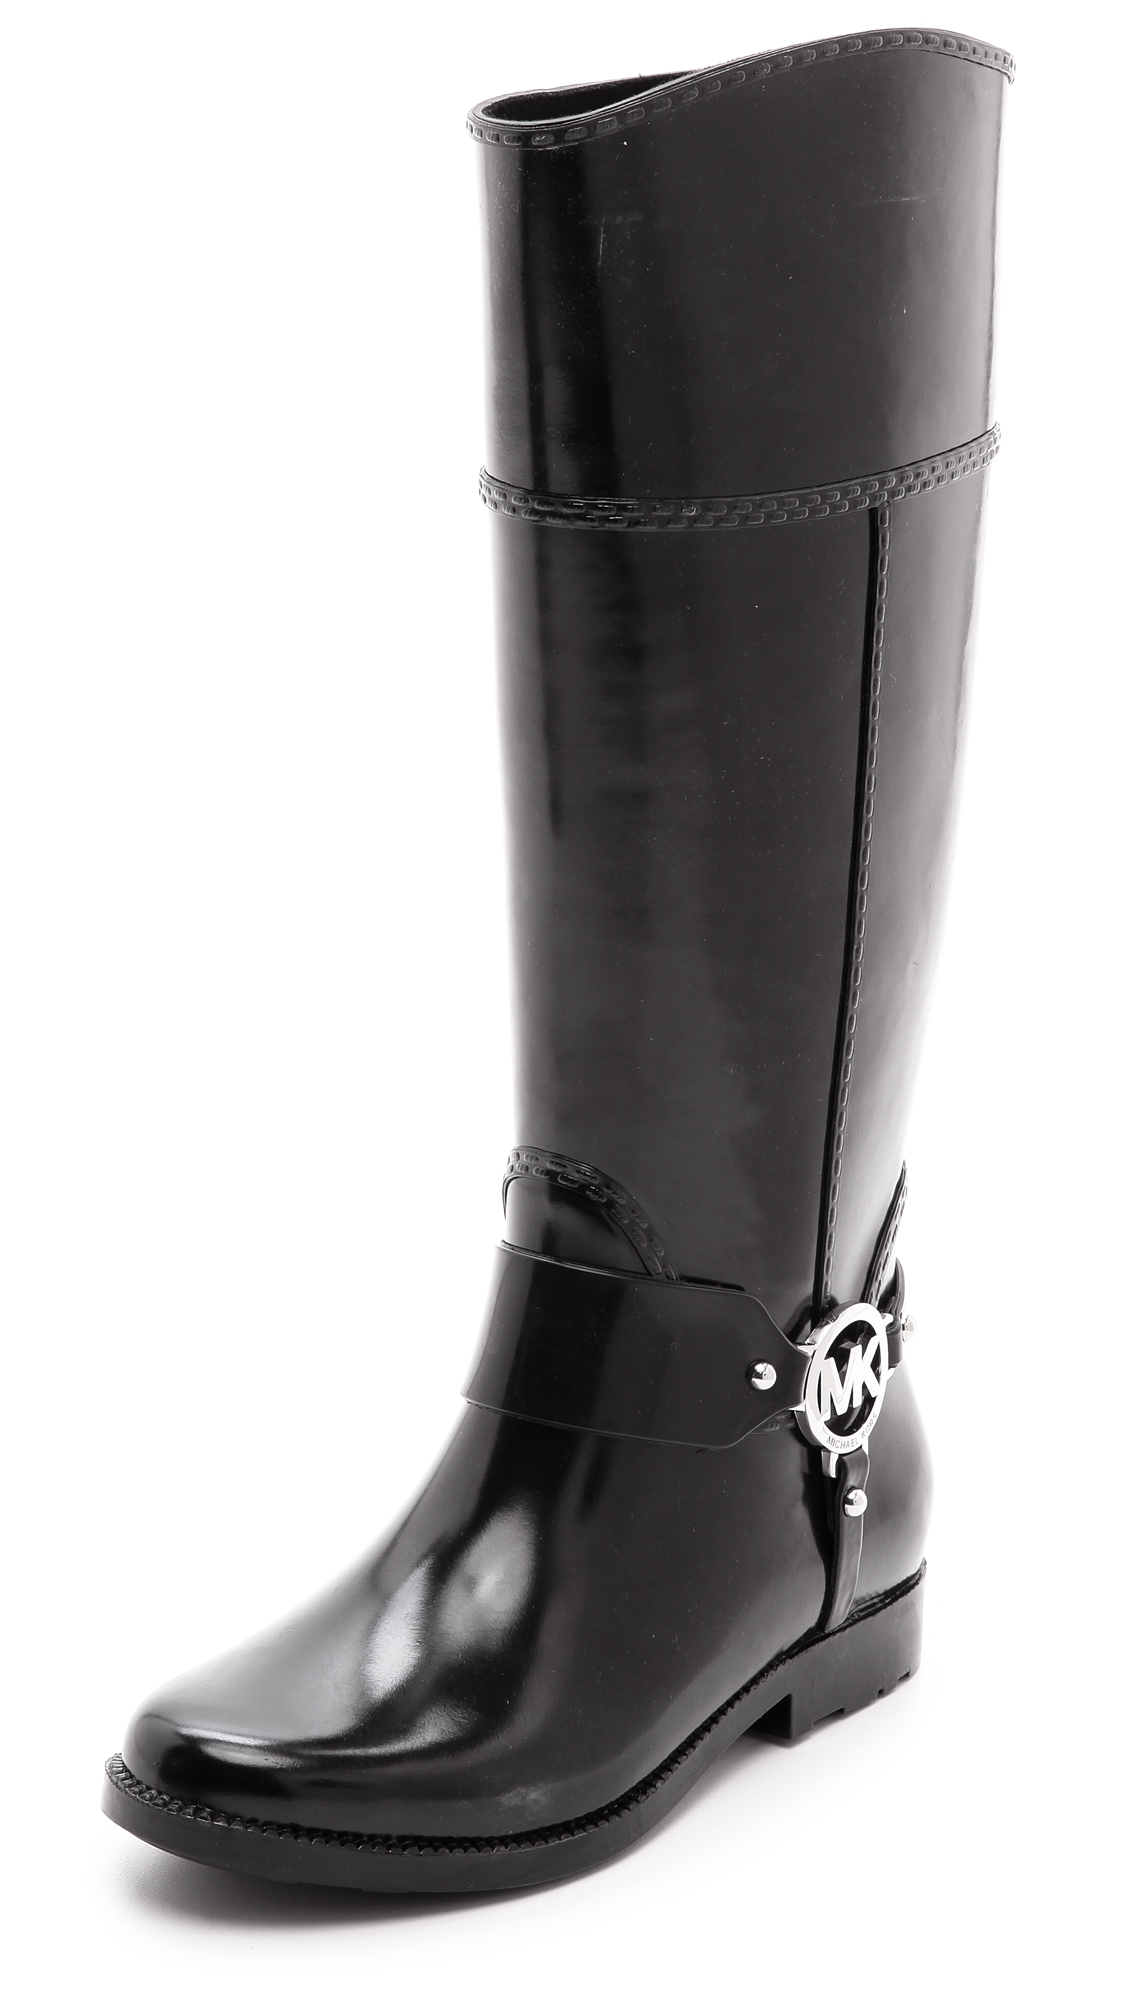 Lyst - Michael Michael Kors Fulton Harness Tall Rain Boots Black in Black